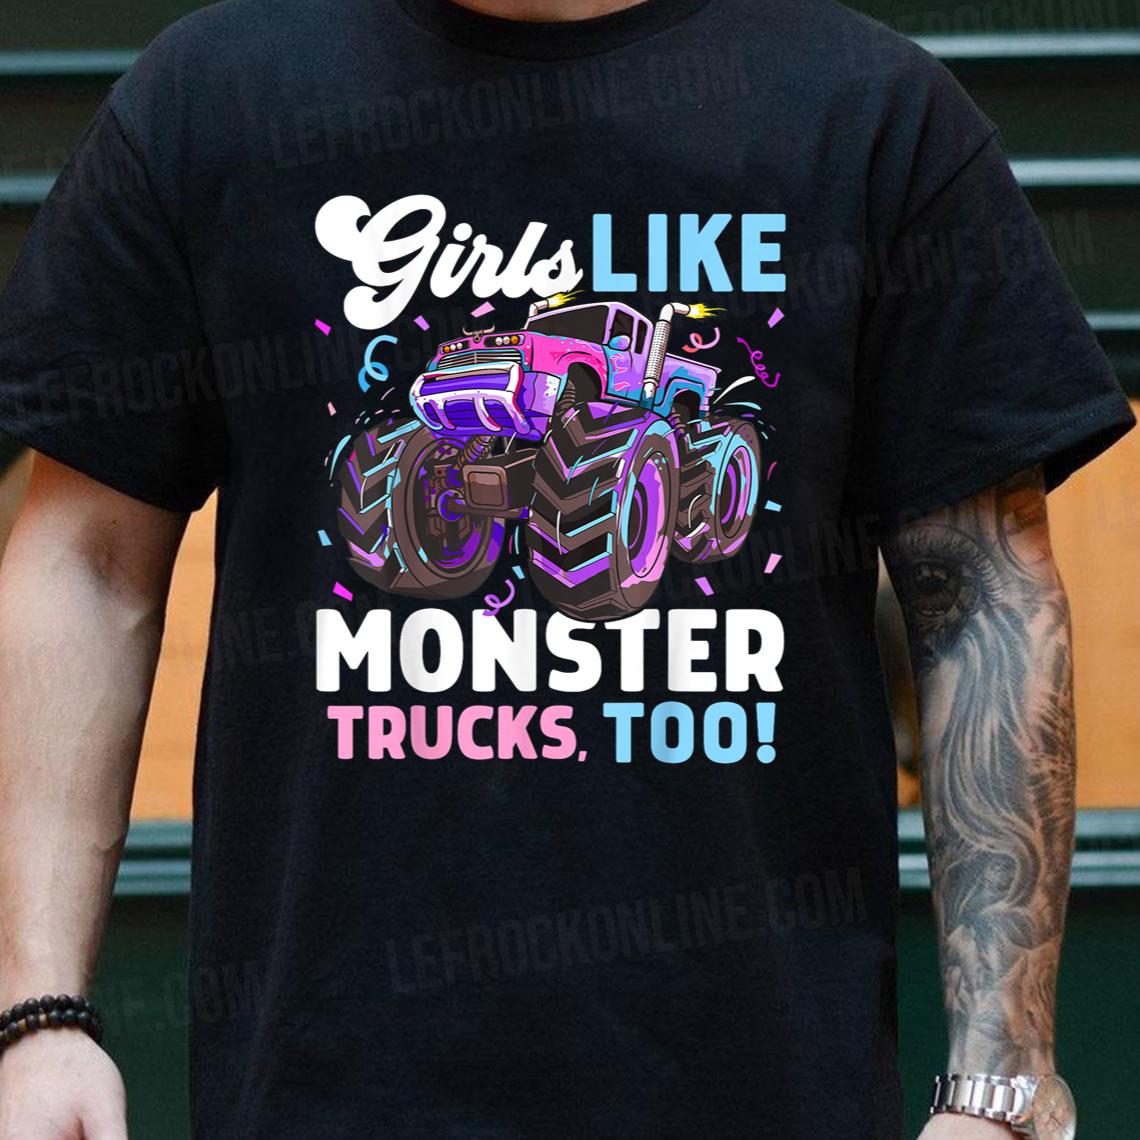 Cute Monster Truck Girls Like Monster Trucks Too